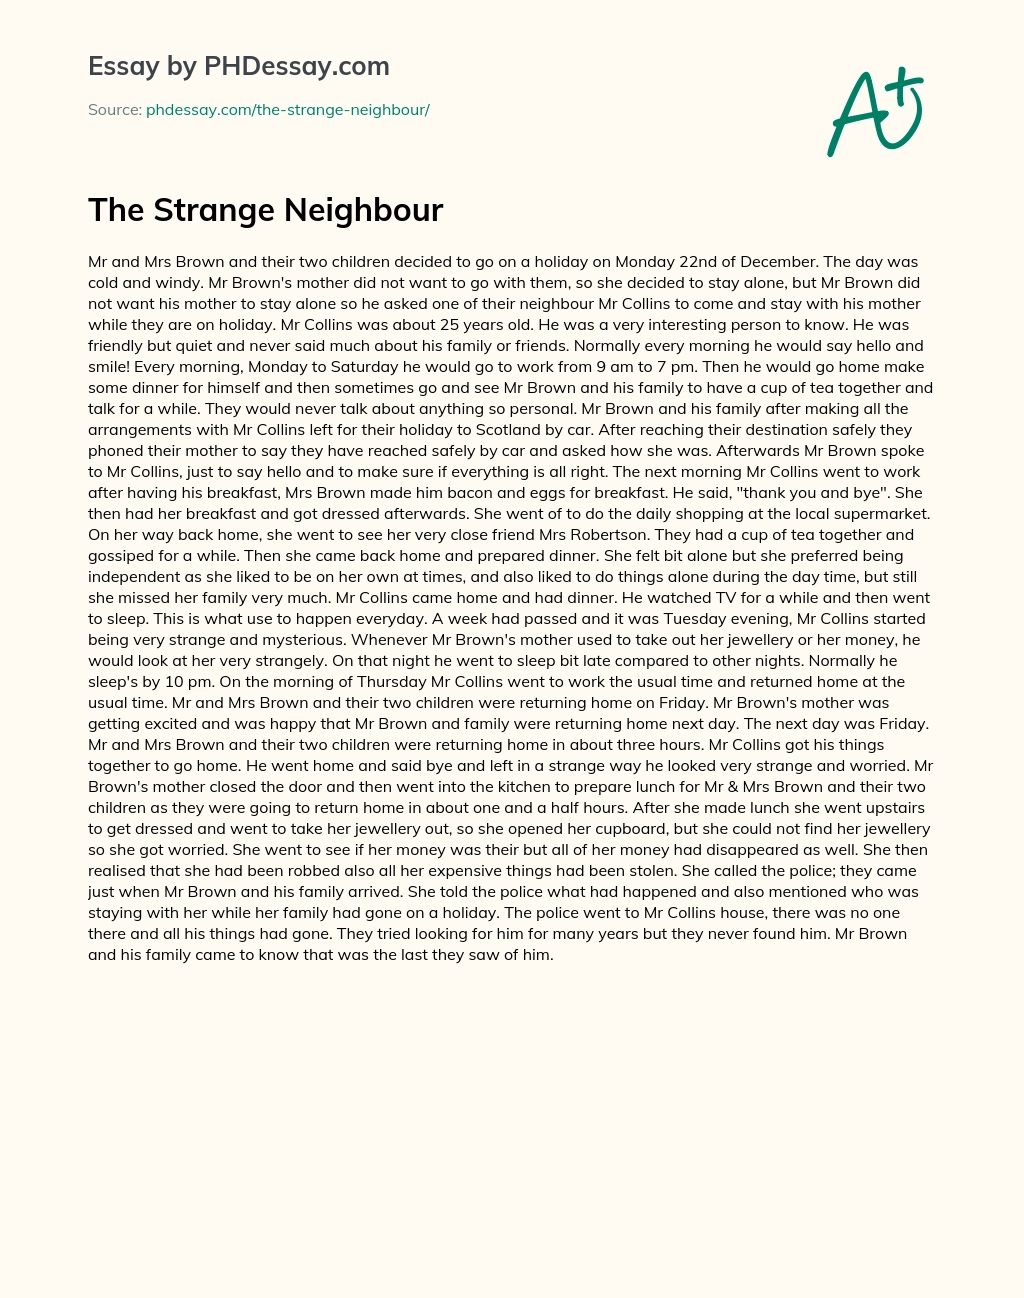 The Strange Neighbour Short Story essay